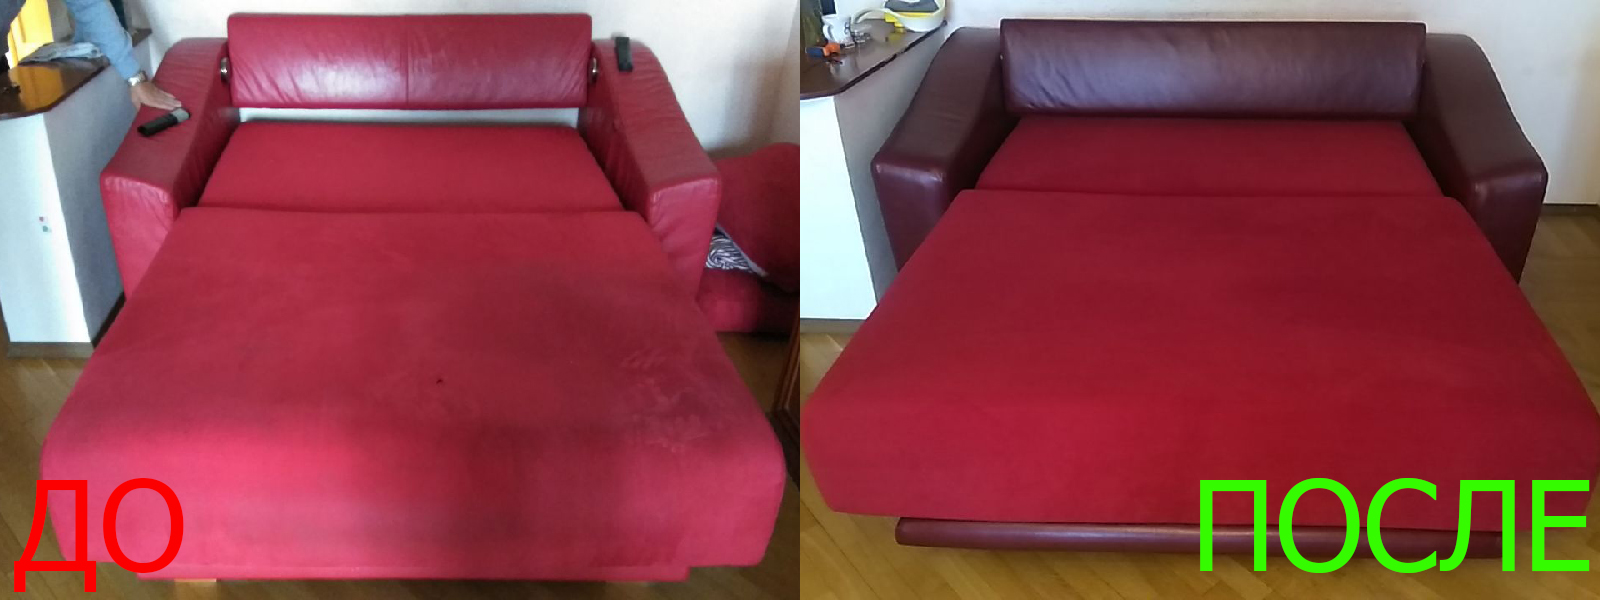 Ремонт механизма дивана в Евпатории разумные цены на услуги, опытные специалисты